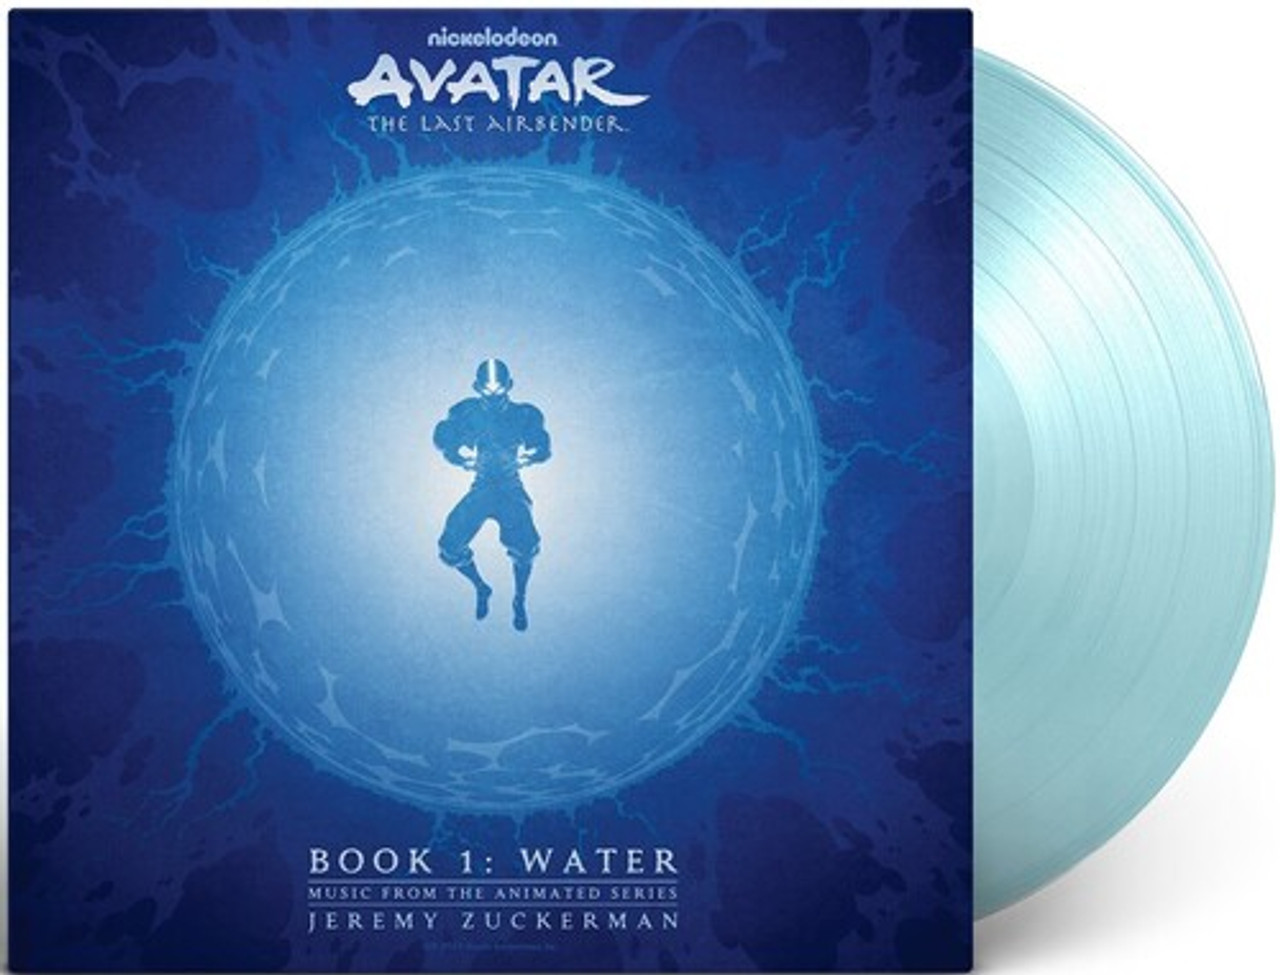 JEREMY ZUCKERMAN - Avatar: The Last Airbender Book 1: Water Vinyl